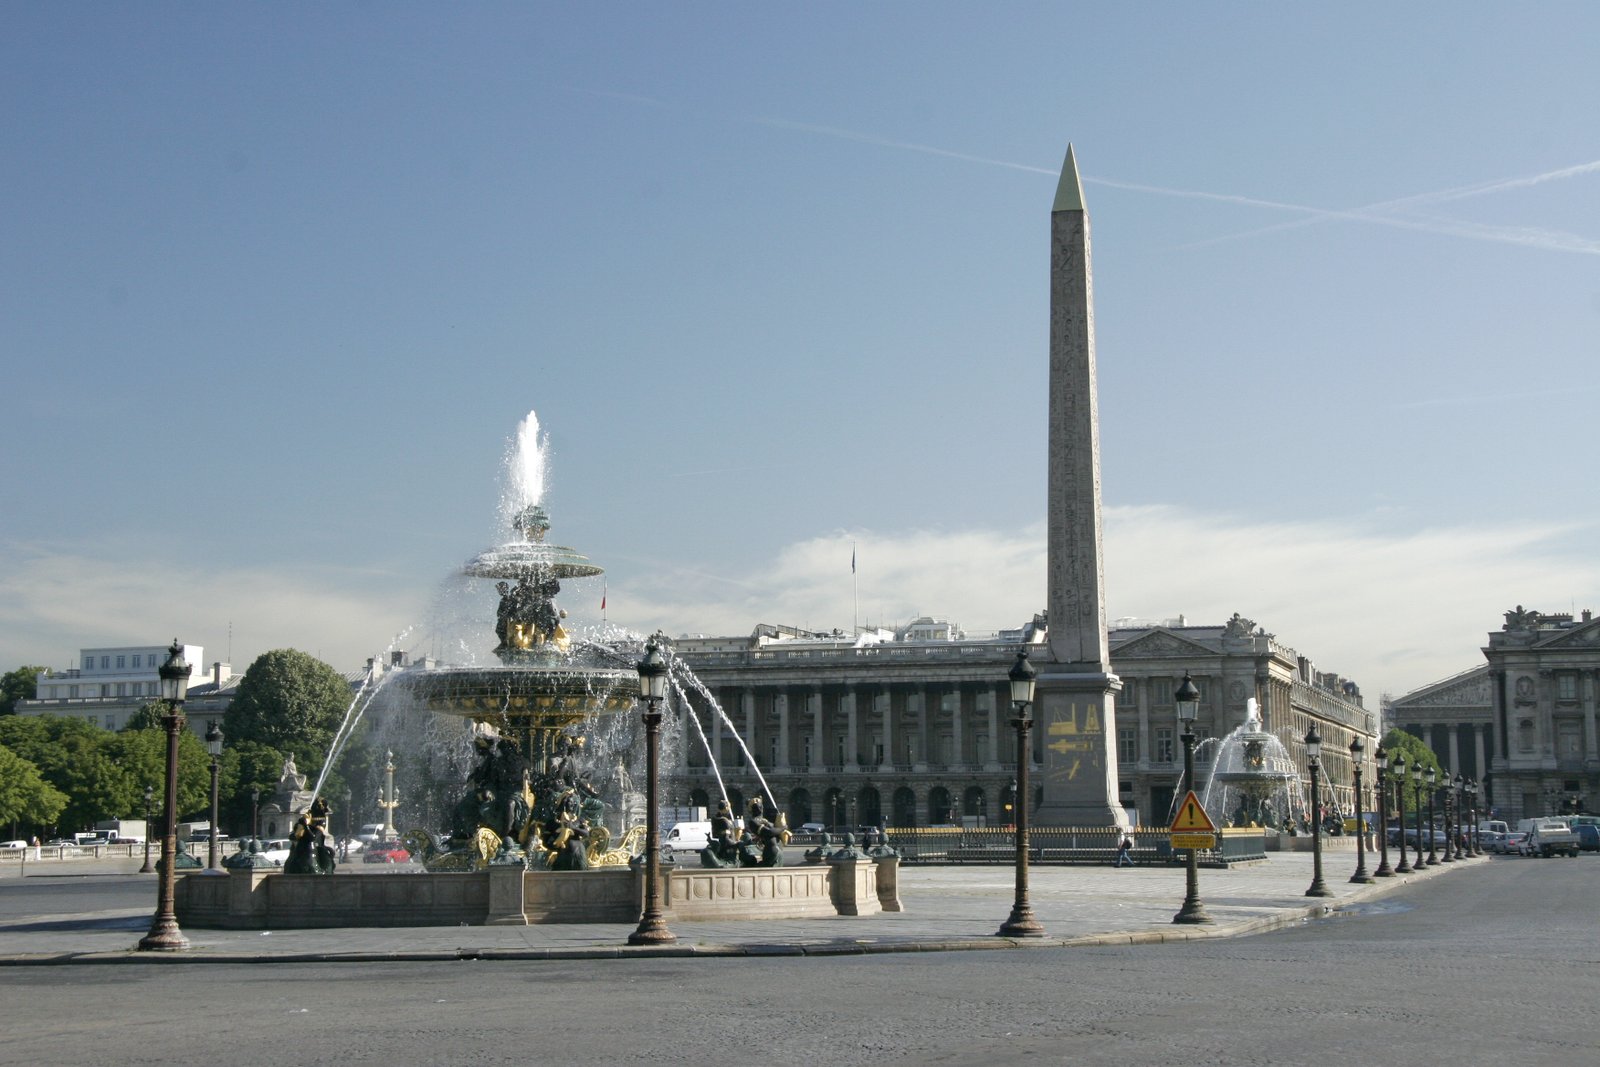 Place De La Concorde The Most Famous Square In Paris